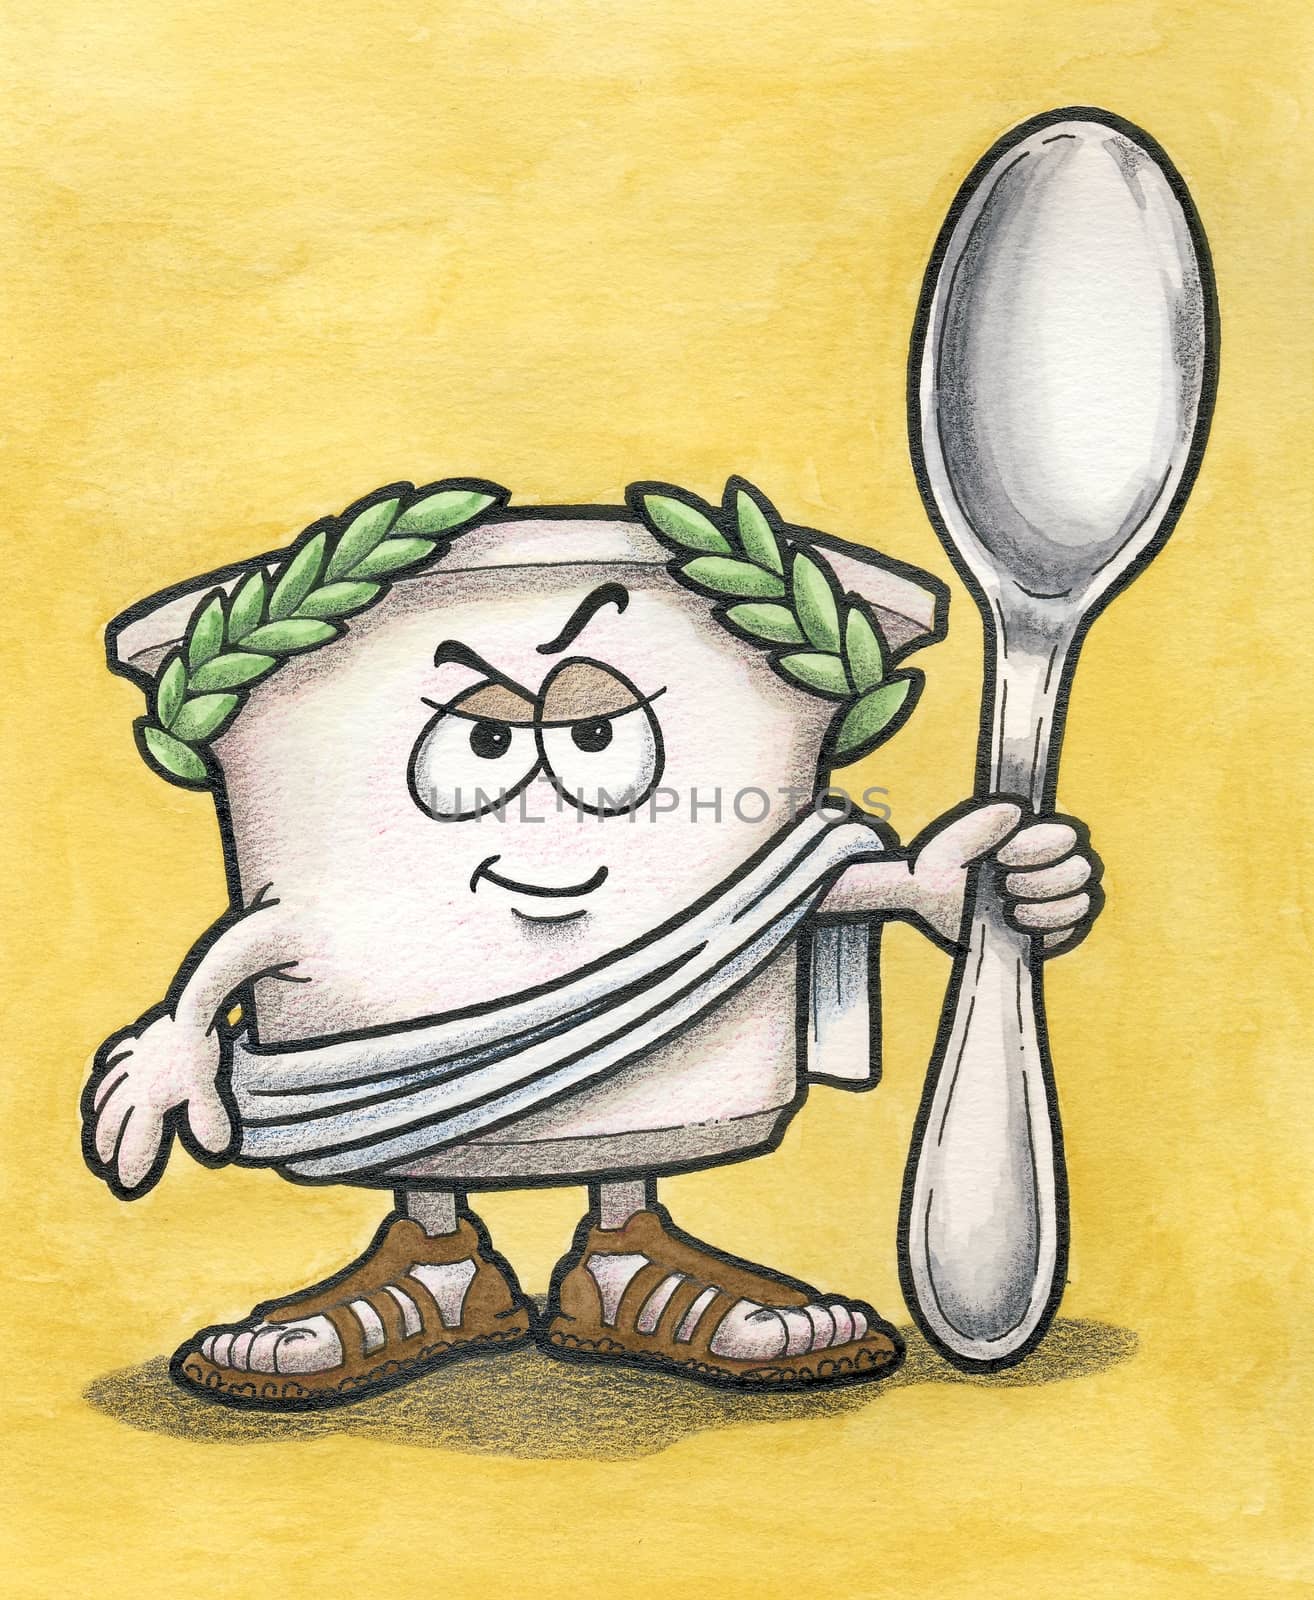 Greek Yogurt Man with Spoon by geneploss